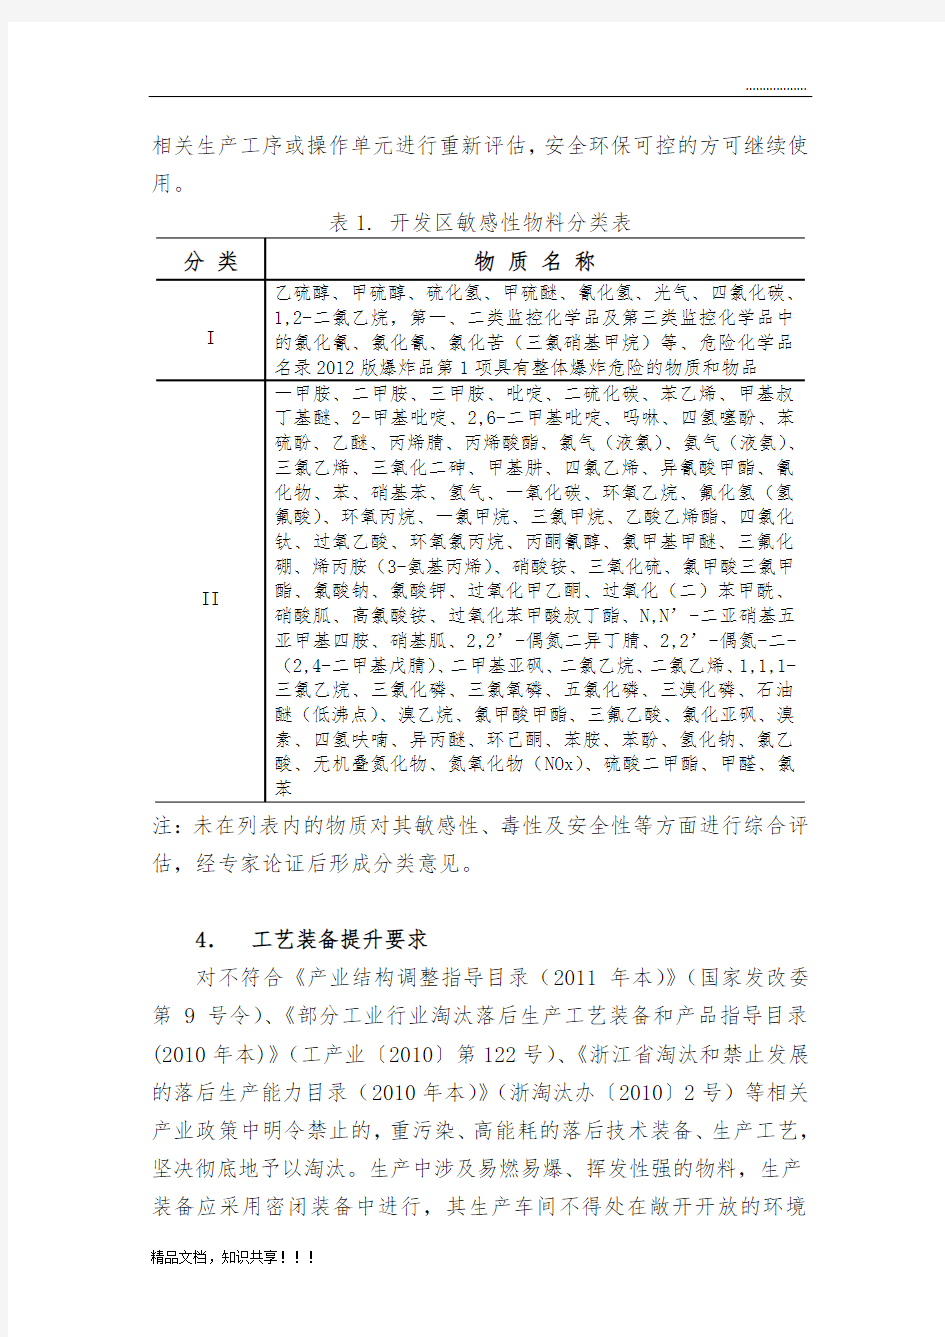 杭州湾上虞经济技术开发区化工企业建设标准化实施细则